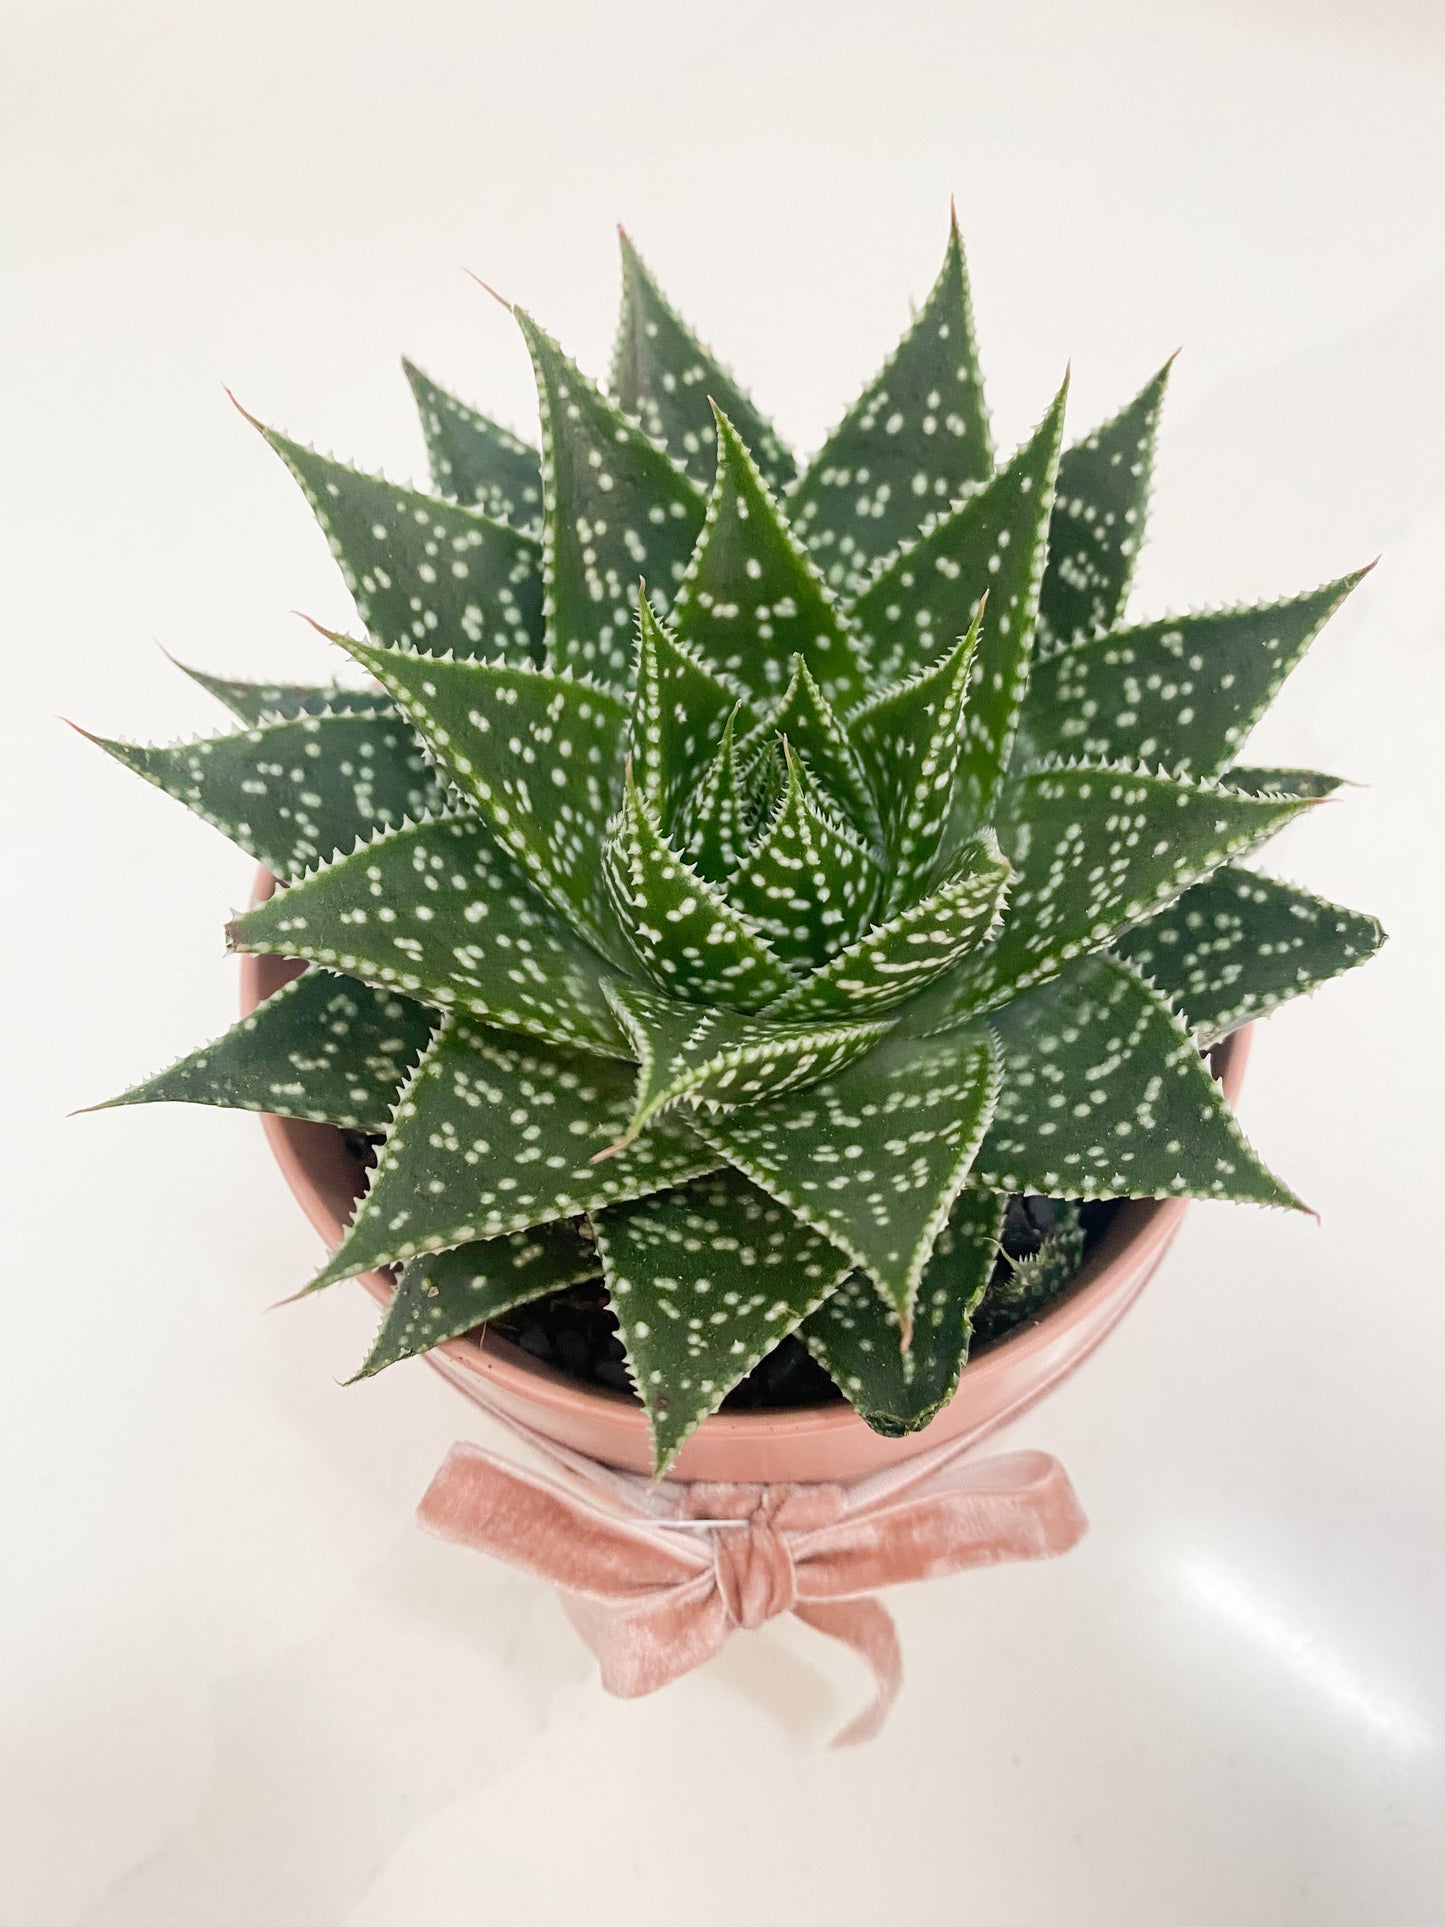 Lace Aloe in Ceramic